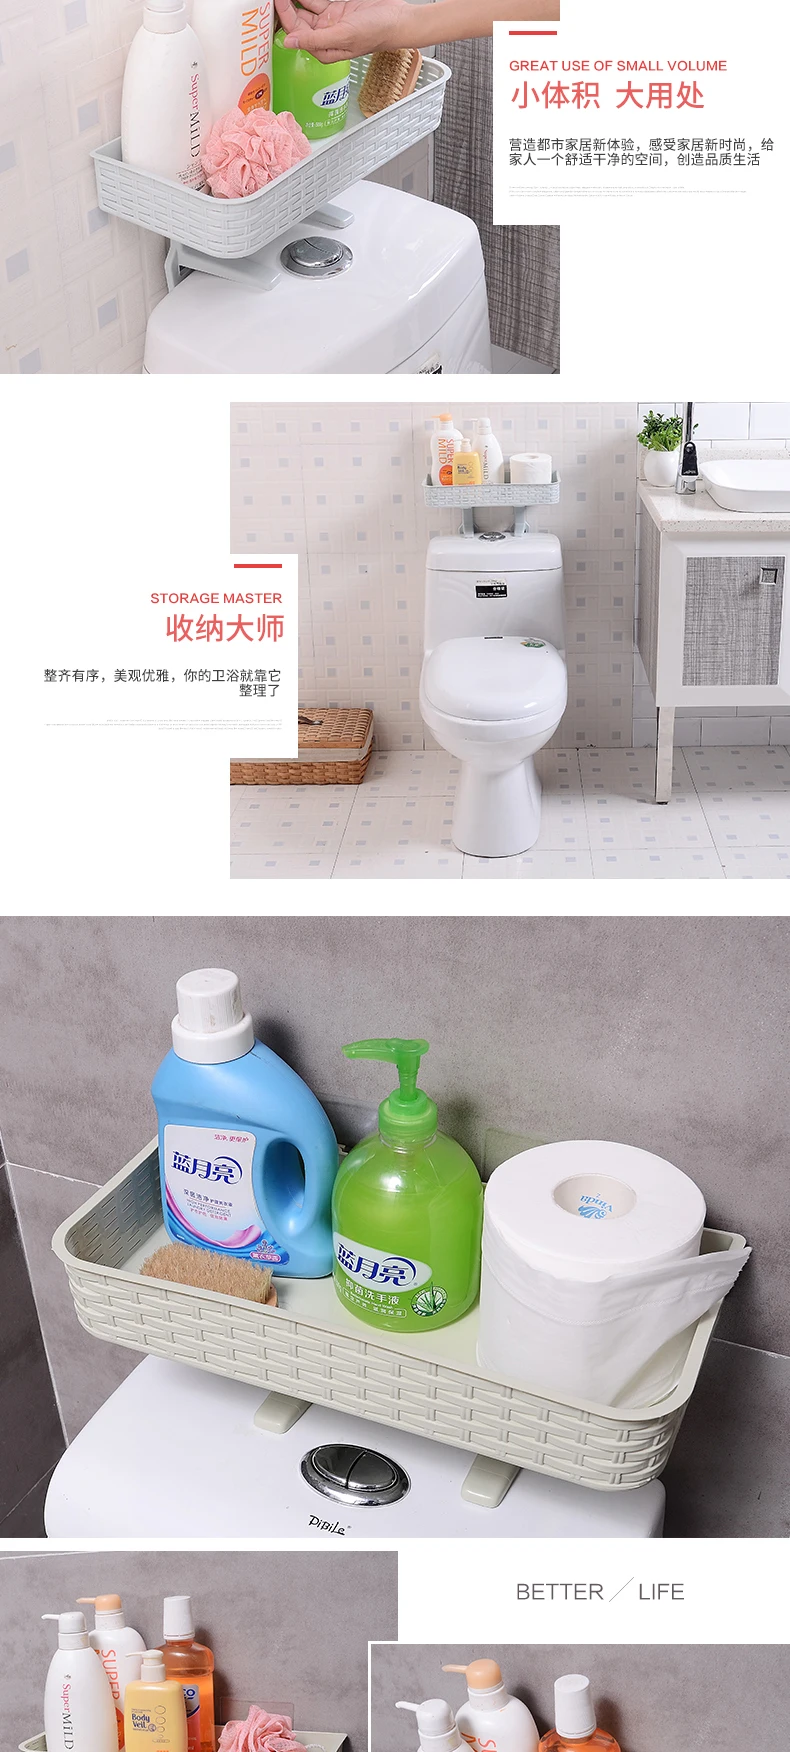 HS040 ванная комната имитация ротанга ногтей бесплатно бесшовные стеллаж для хранения, туалет стойка для крышек 36*16*23,5 см